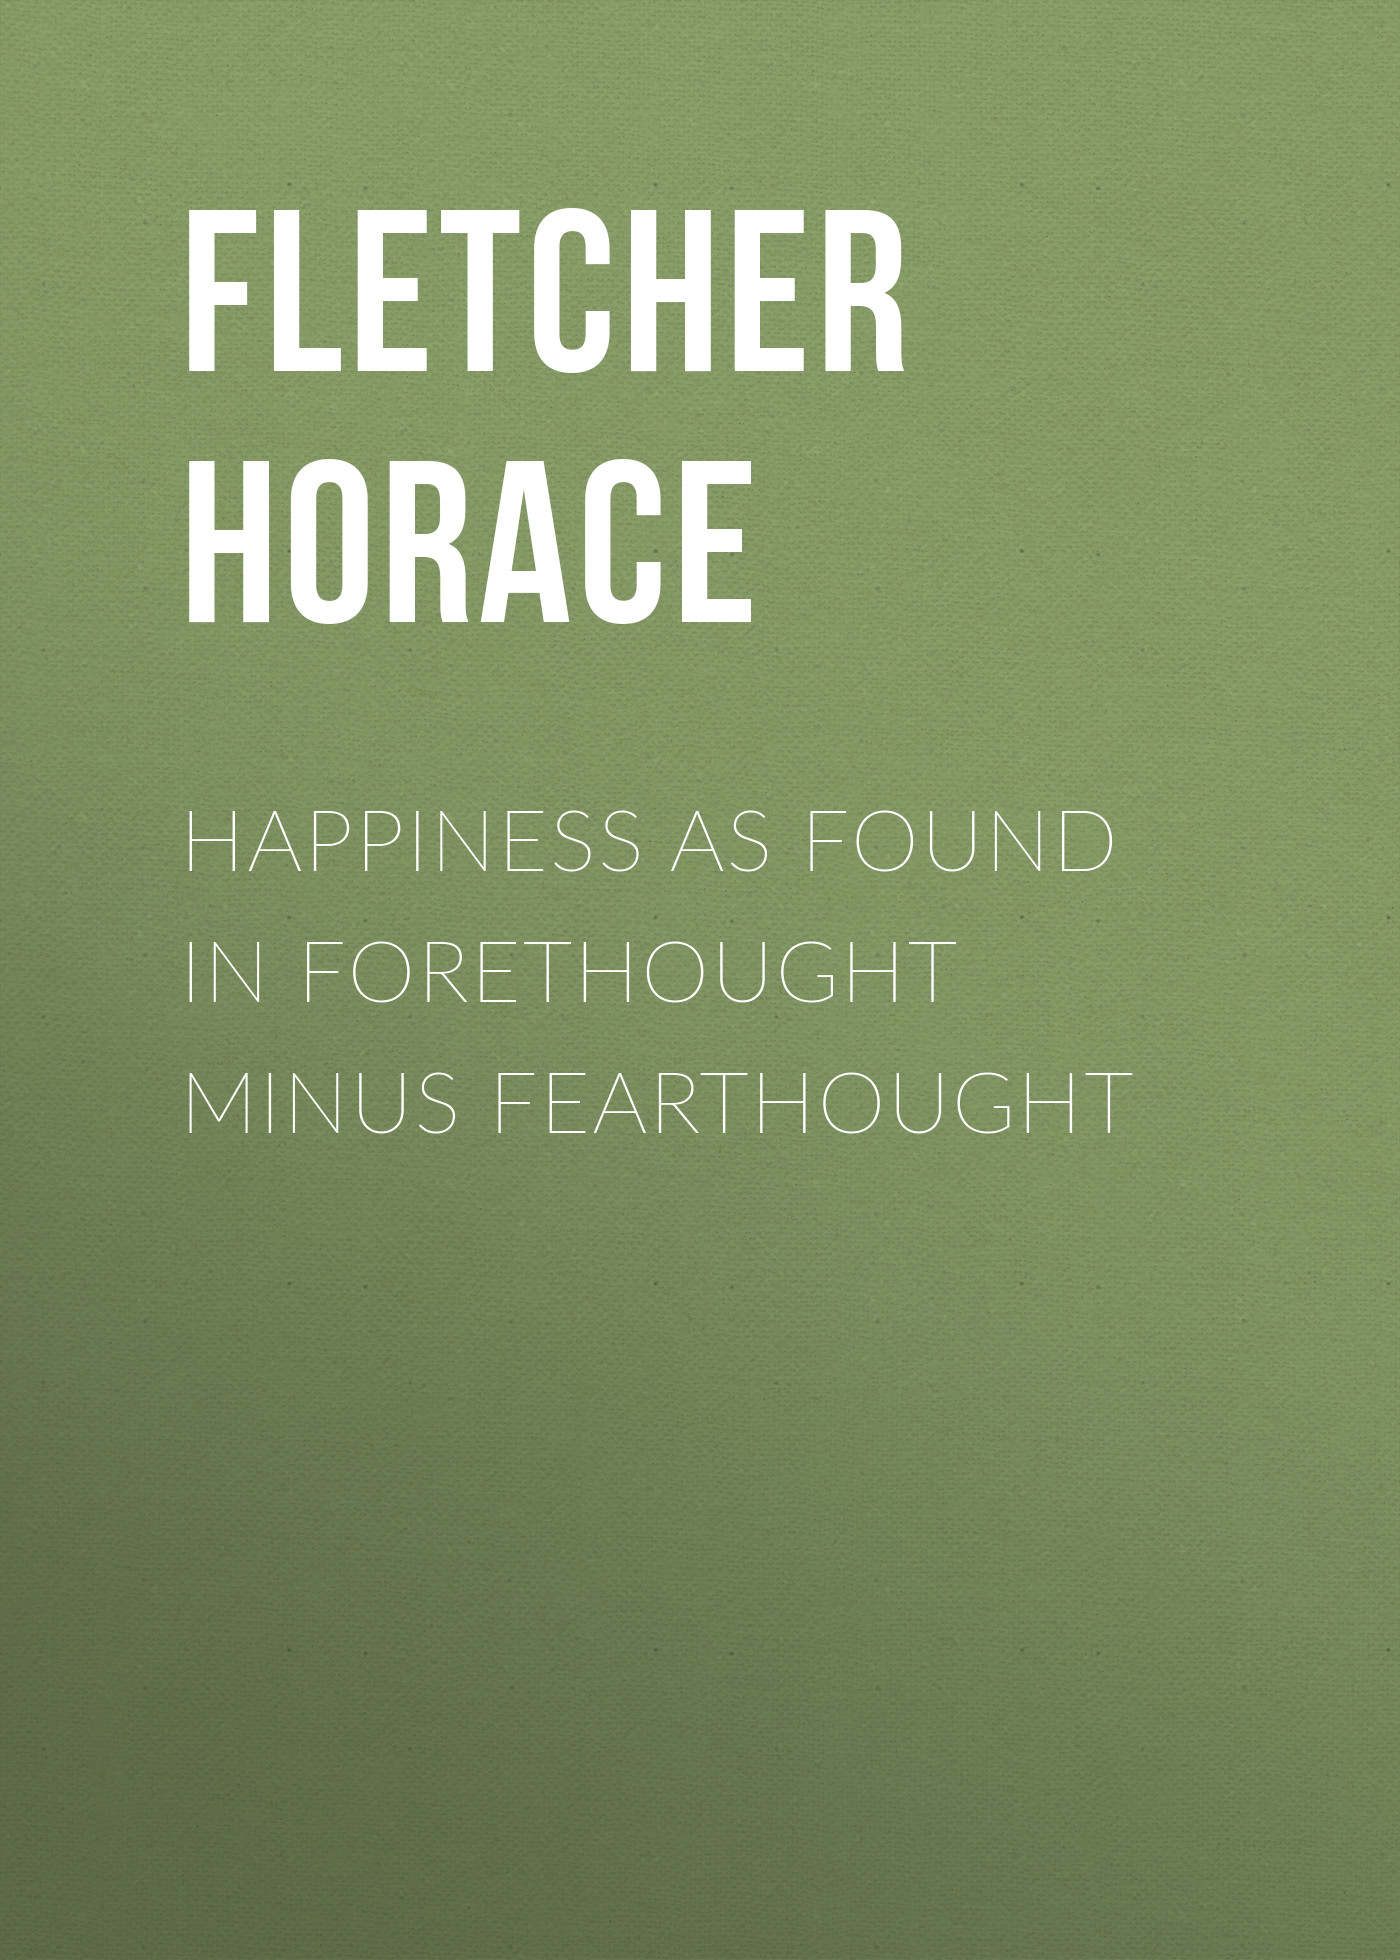 Книга Happiness as Found in Forethought Minus Fearthought из серии , созданная Horace Fletcher, может относится к жанру Зарубежная старинная литература, Зарубежная классика. Стоимость электронной книги Happiness as Found in Forethought Minus Fearthought с идентификатором 24726353 составляет 0 руб.